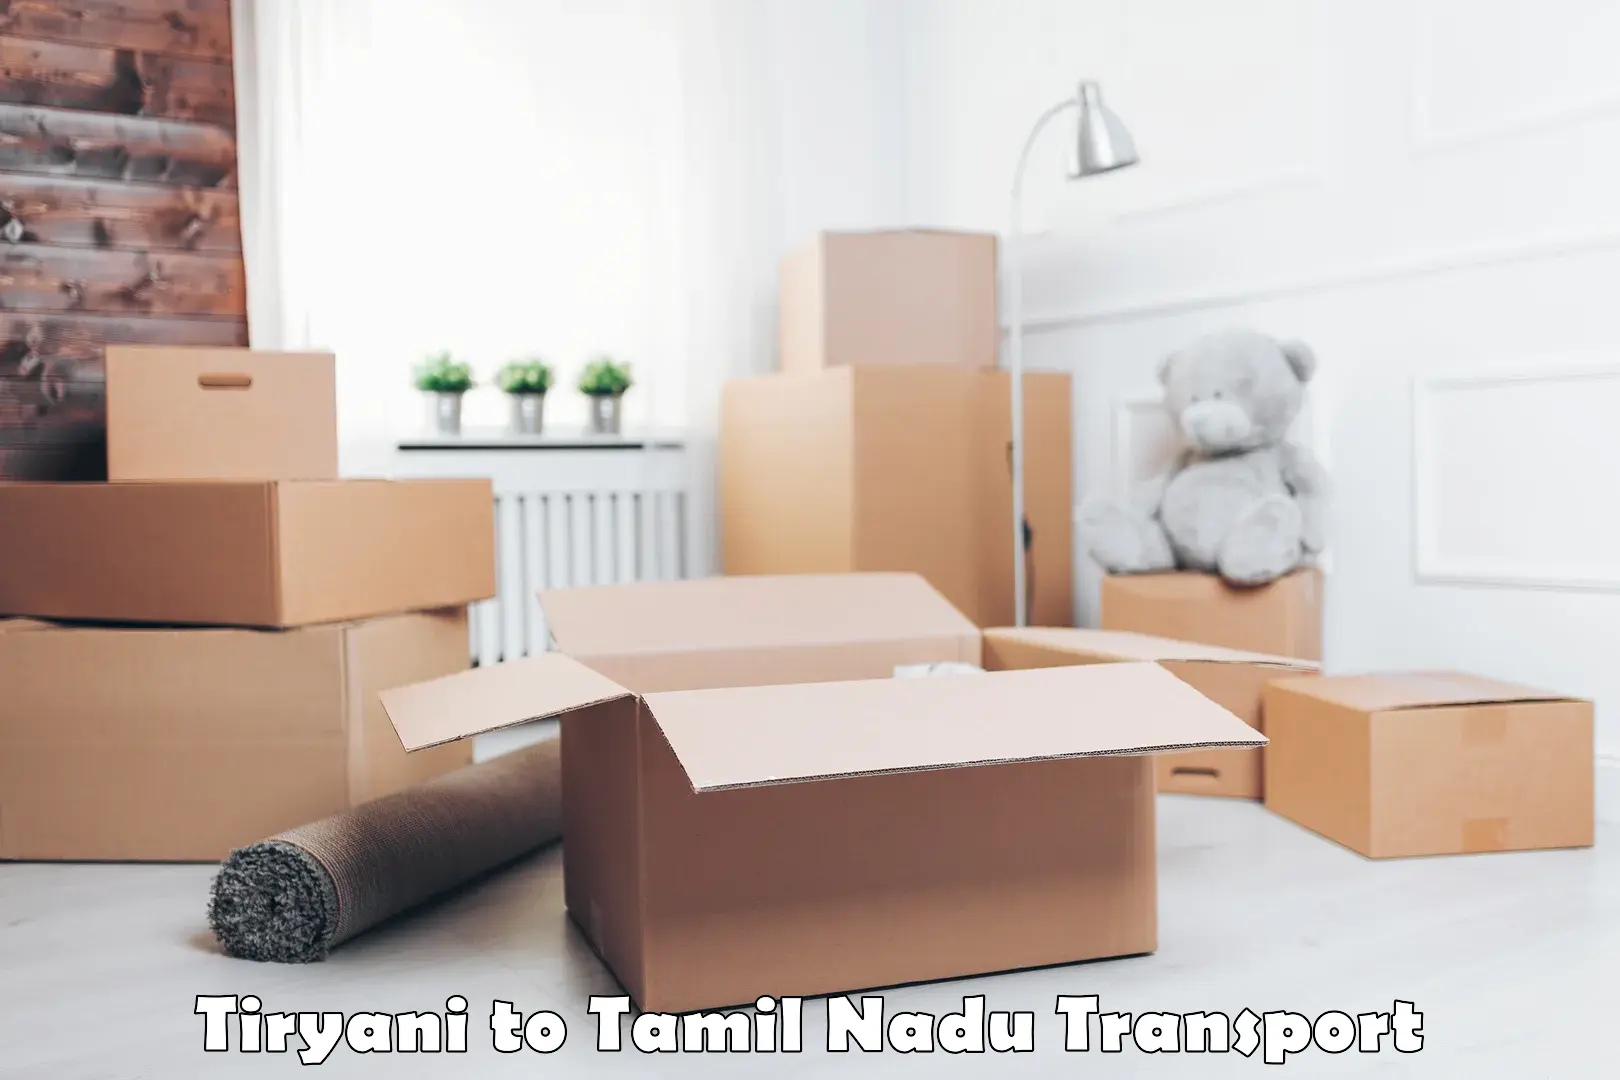 Furniture transport service in Tiryani to Palani